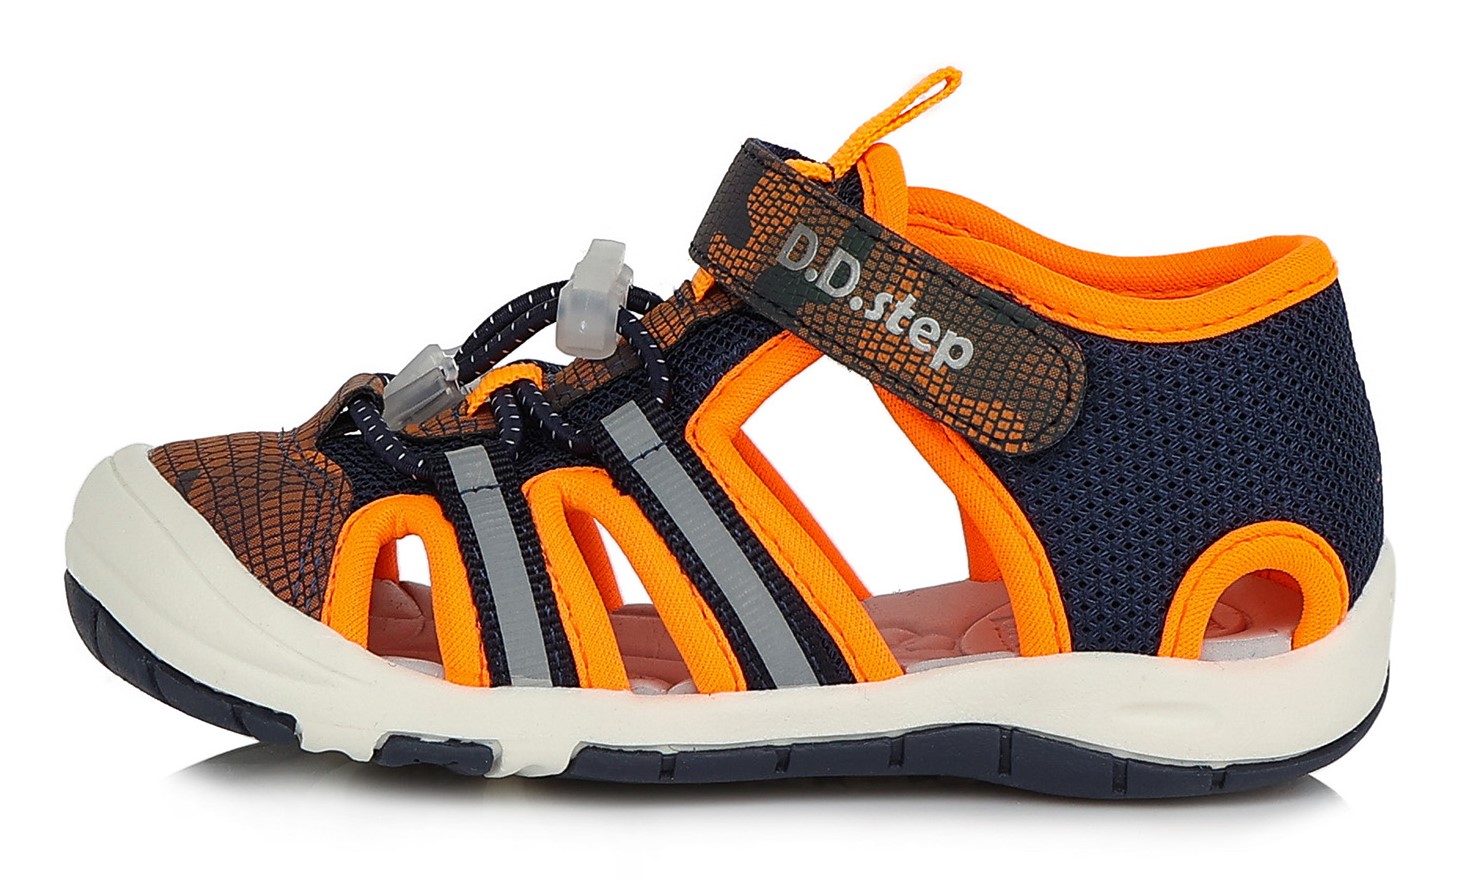 Dětské letní sandálky D.D.step G065-338M oranžové Velikost: 30 (EU)